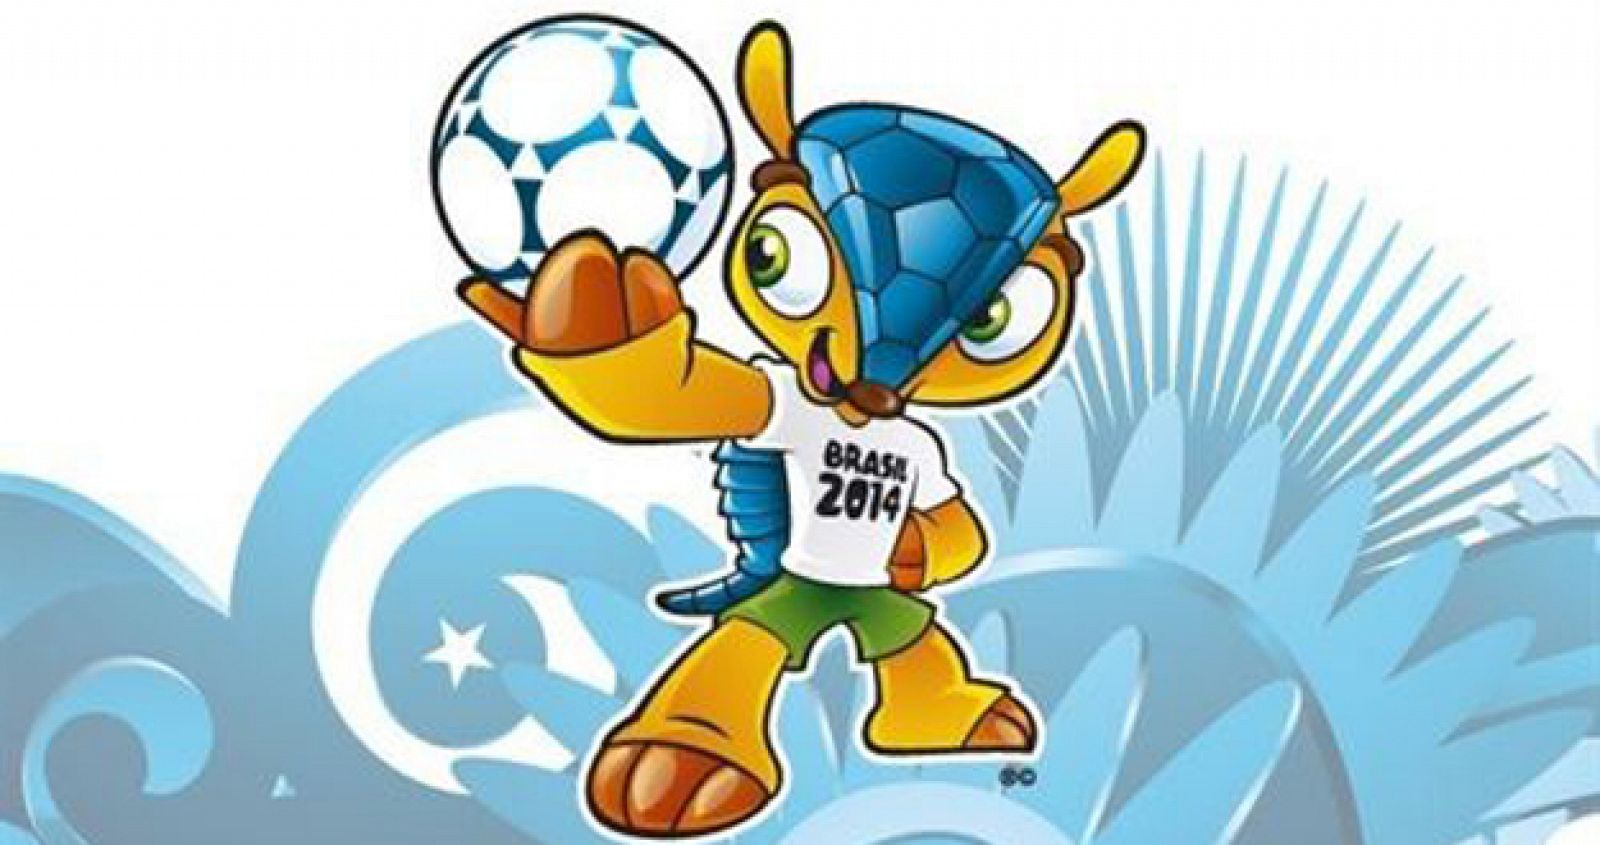 La mascota del Mundial 2014, un armadillo de tres bandas.